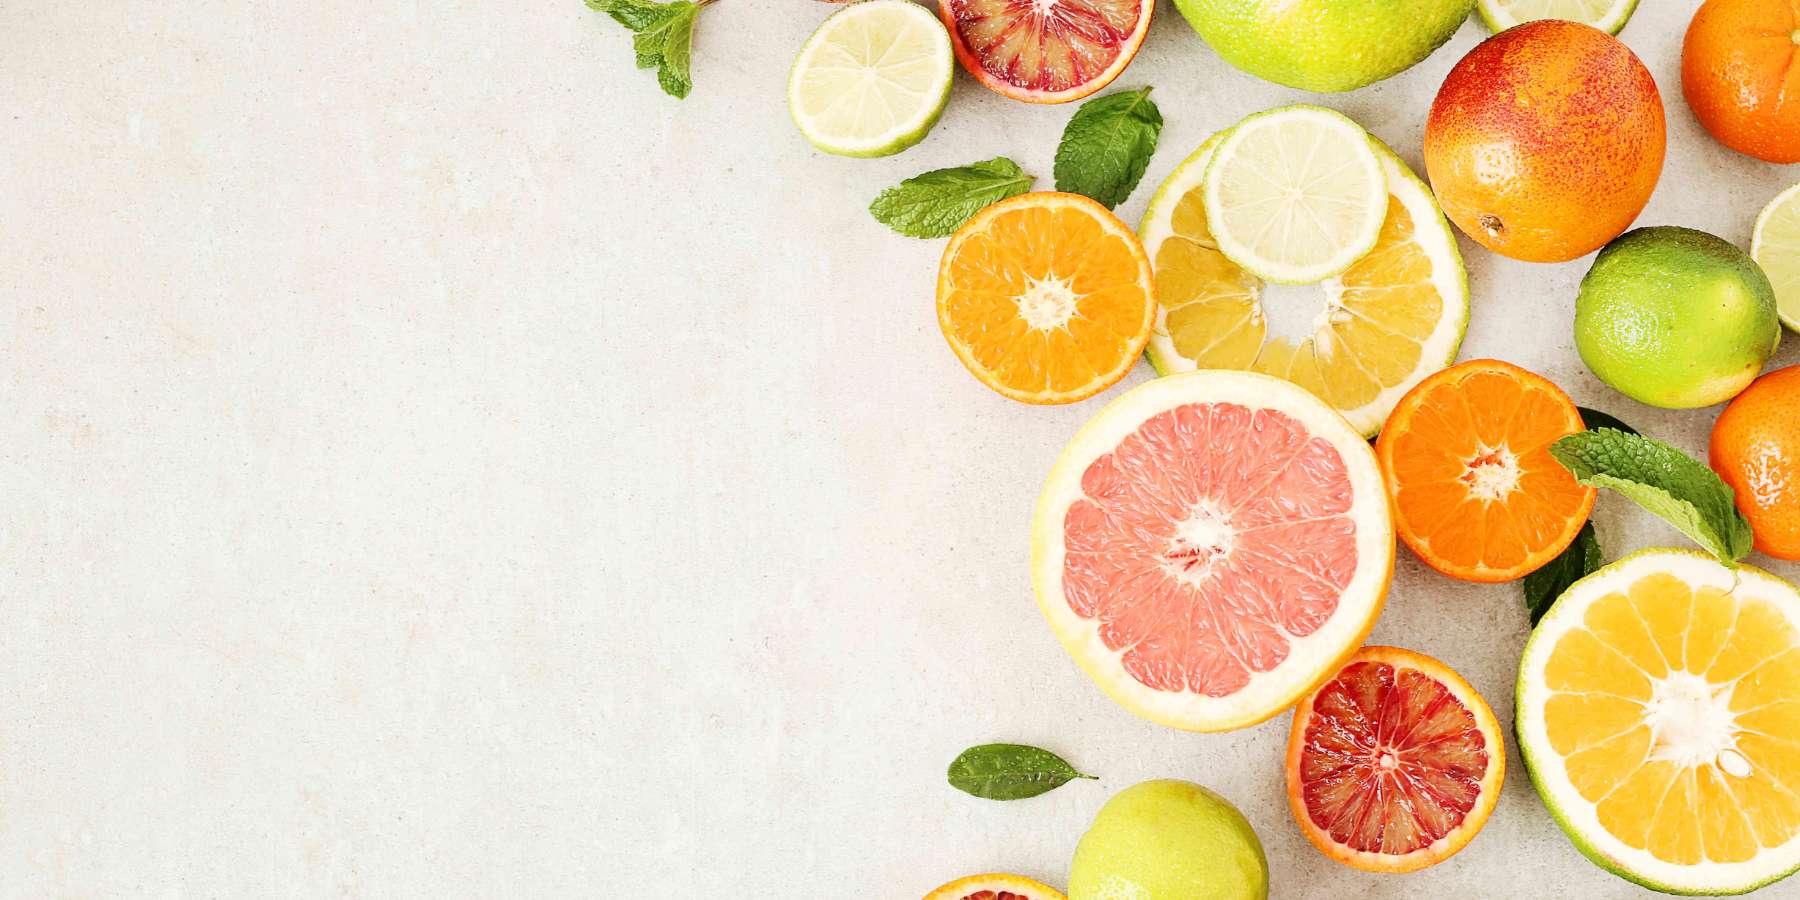 cytrusy - pomarańcza, grapefruit, limonka, cytryna